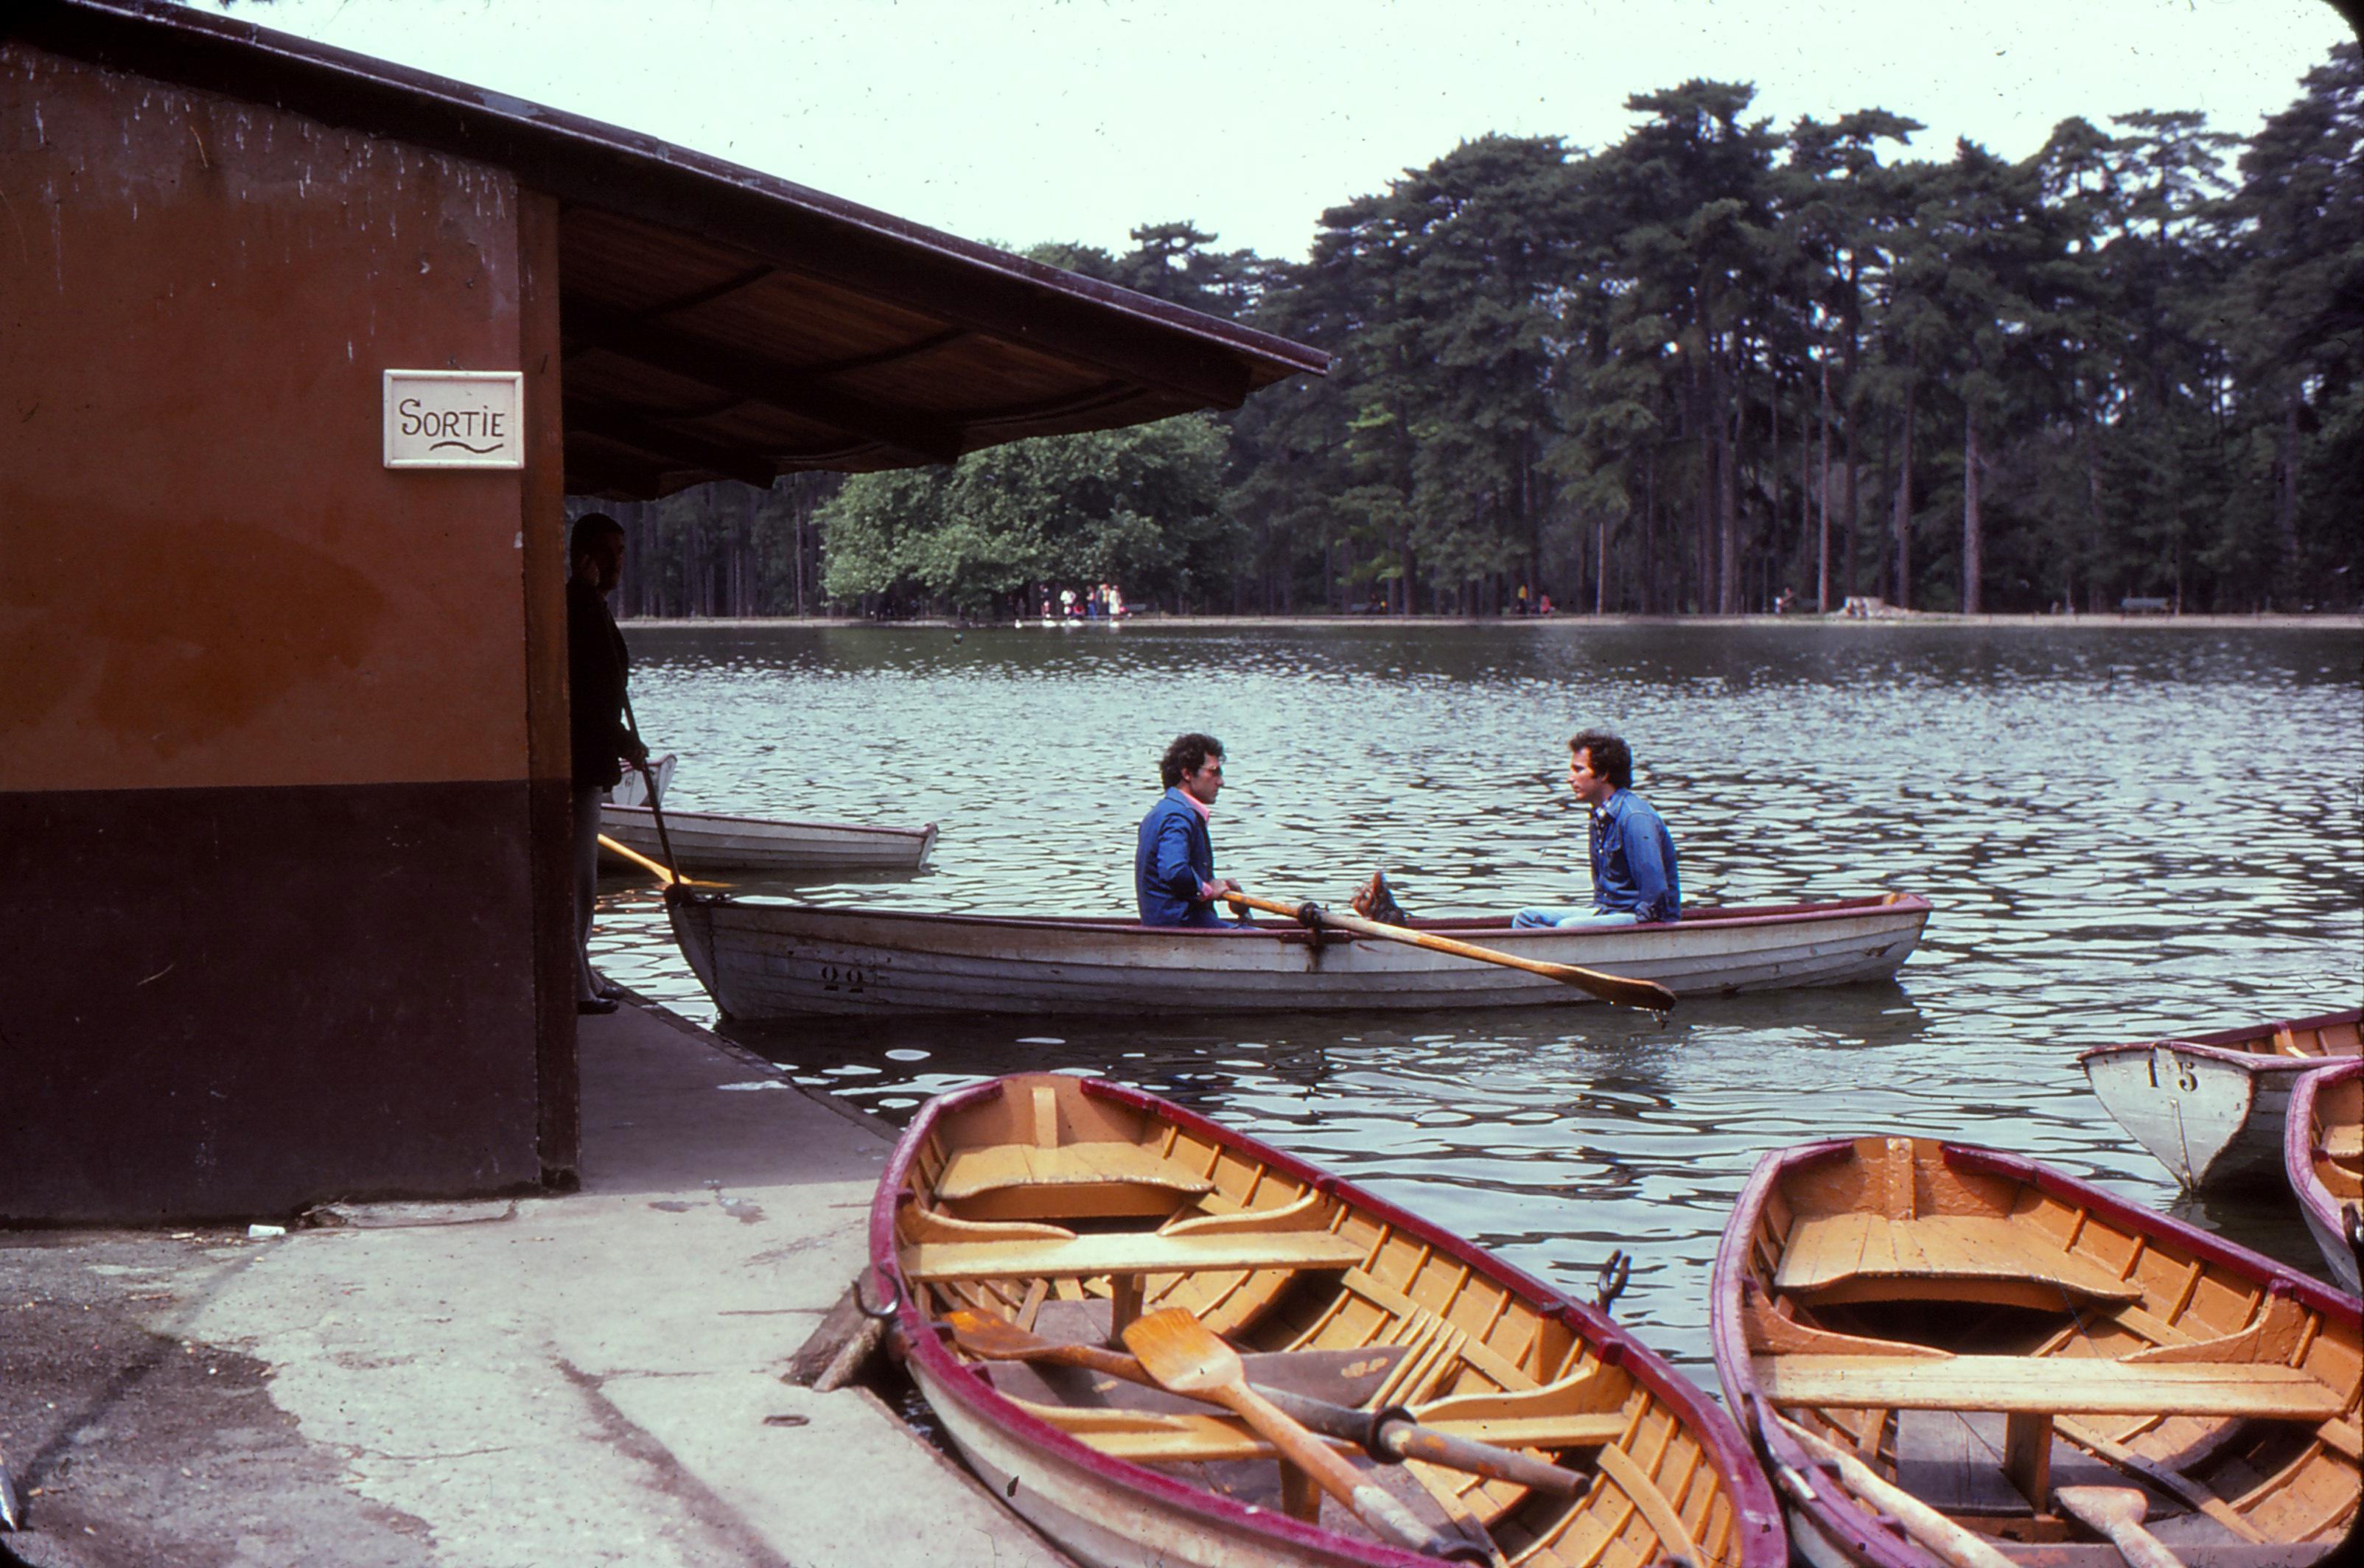 La randonnée à Travers l'Europe – Photos d'Un Américain de l'Aventure de l'1977-1979